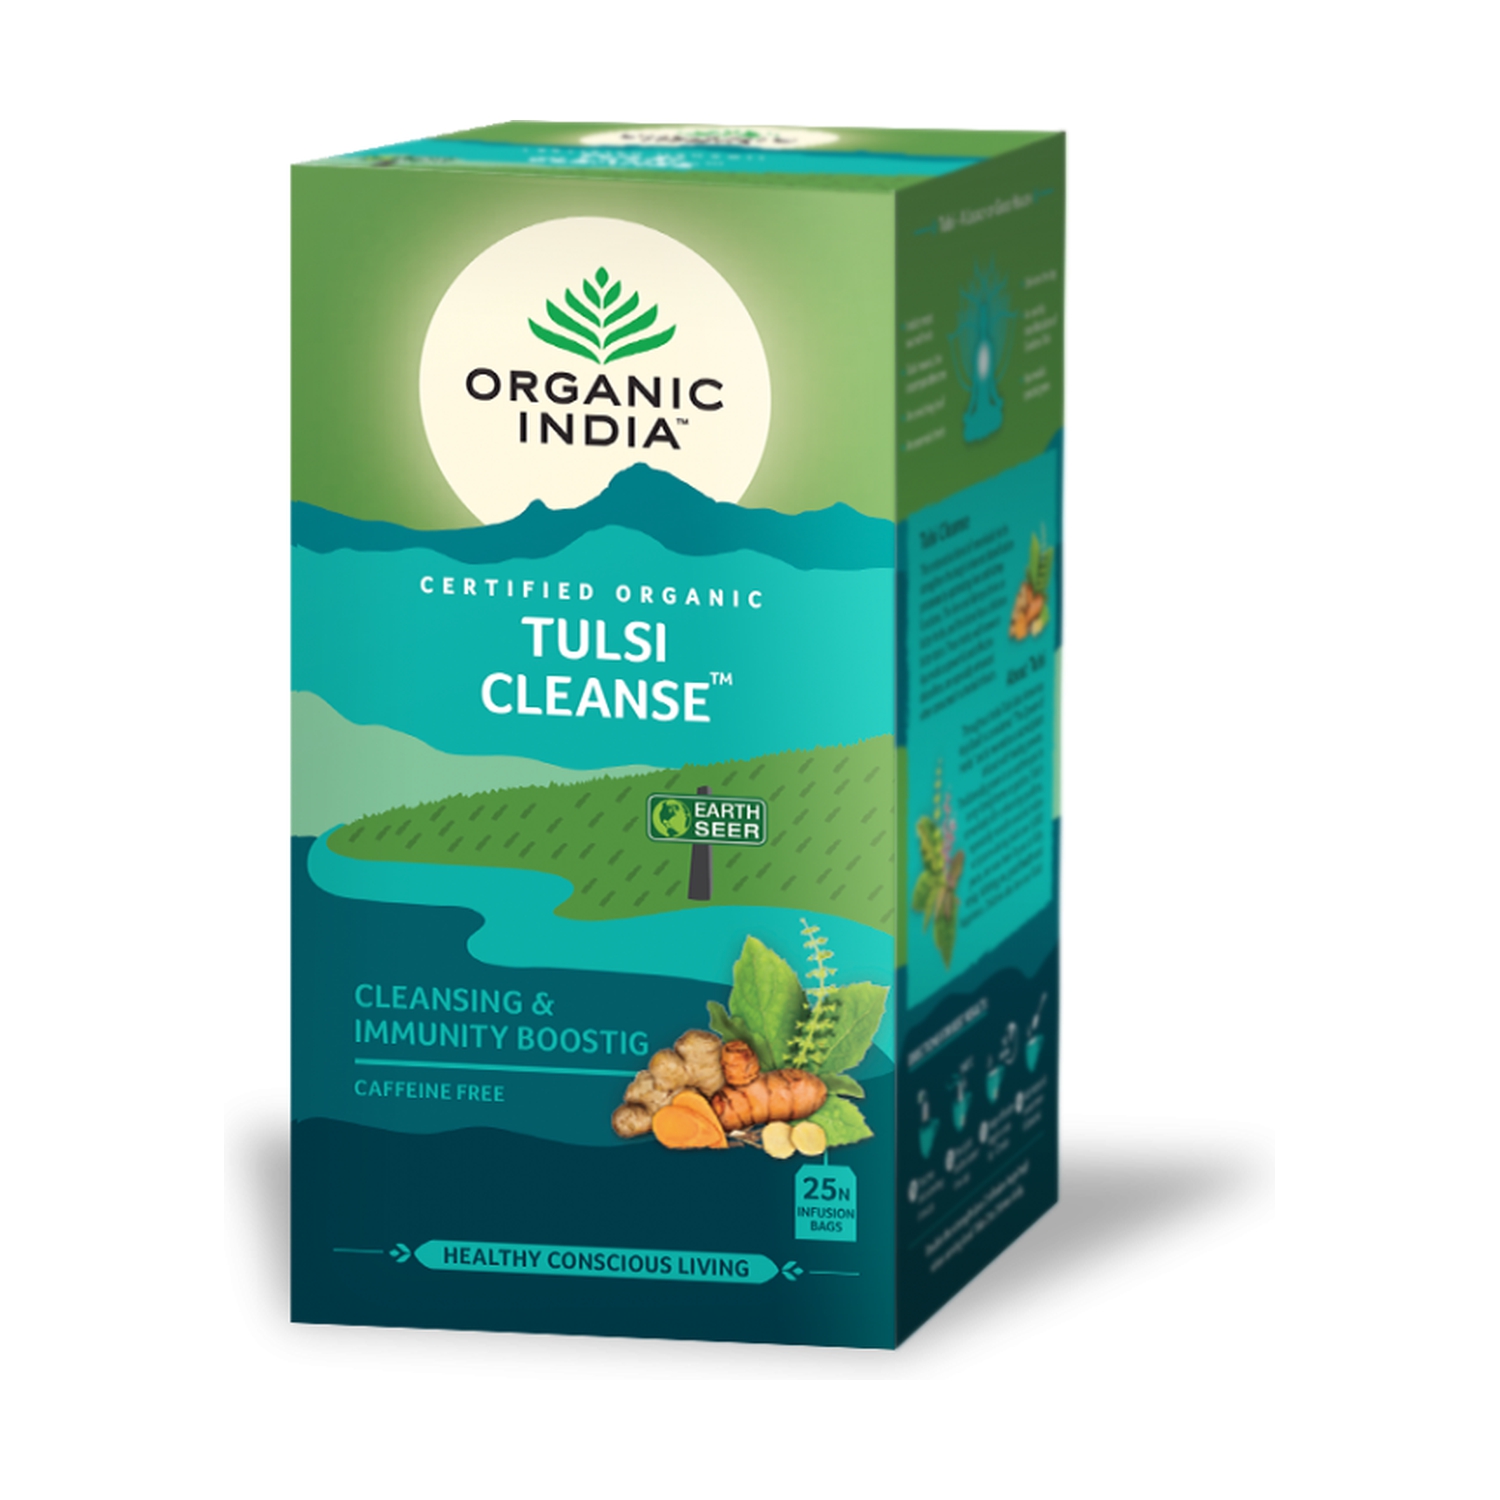 TULSI CLEANSE, Organic India (ТУЛСИ ОЧИЩЕНИЕ, чай, ежедневная поддержка для печени и почек, Органик Индия), 25 пакетиков.